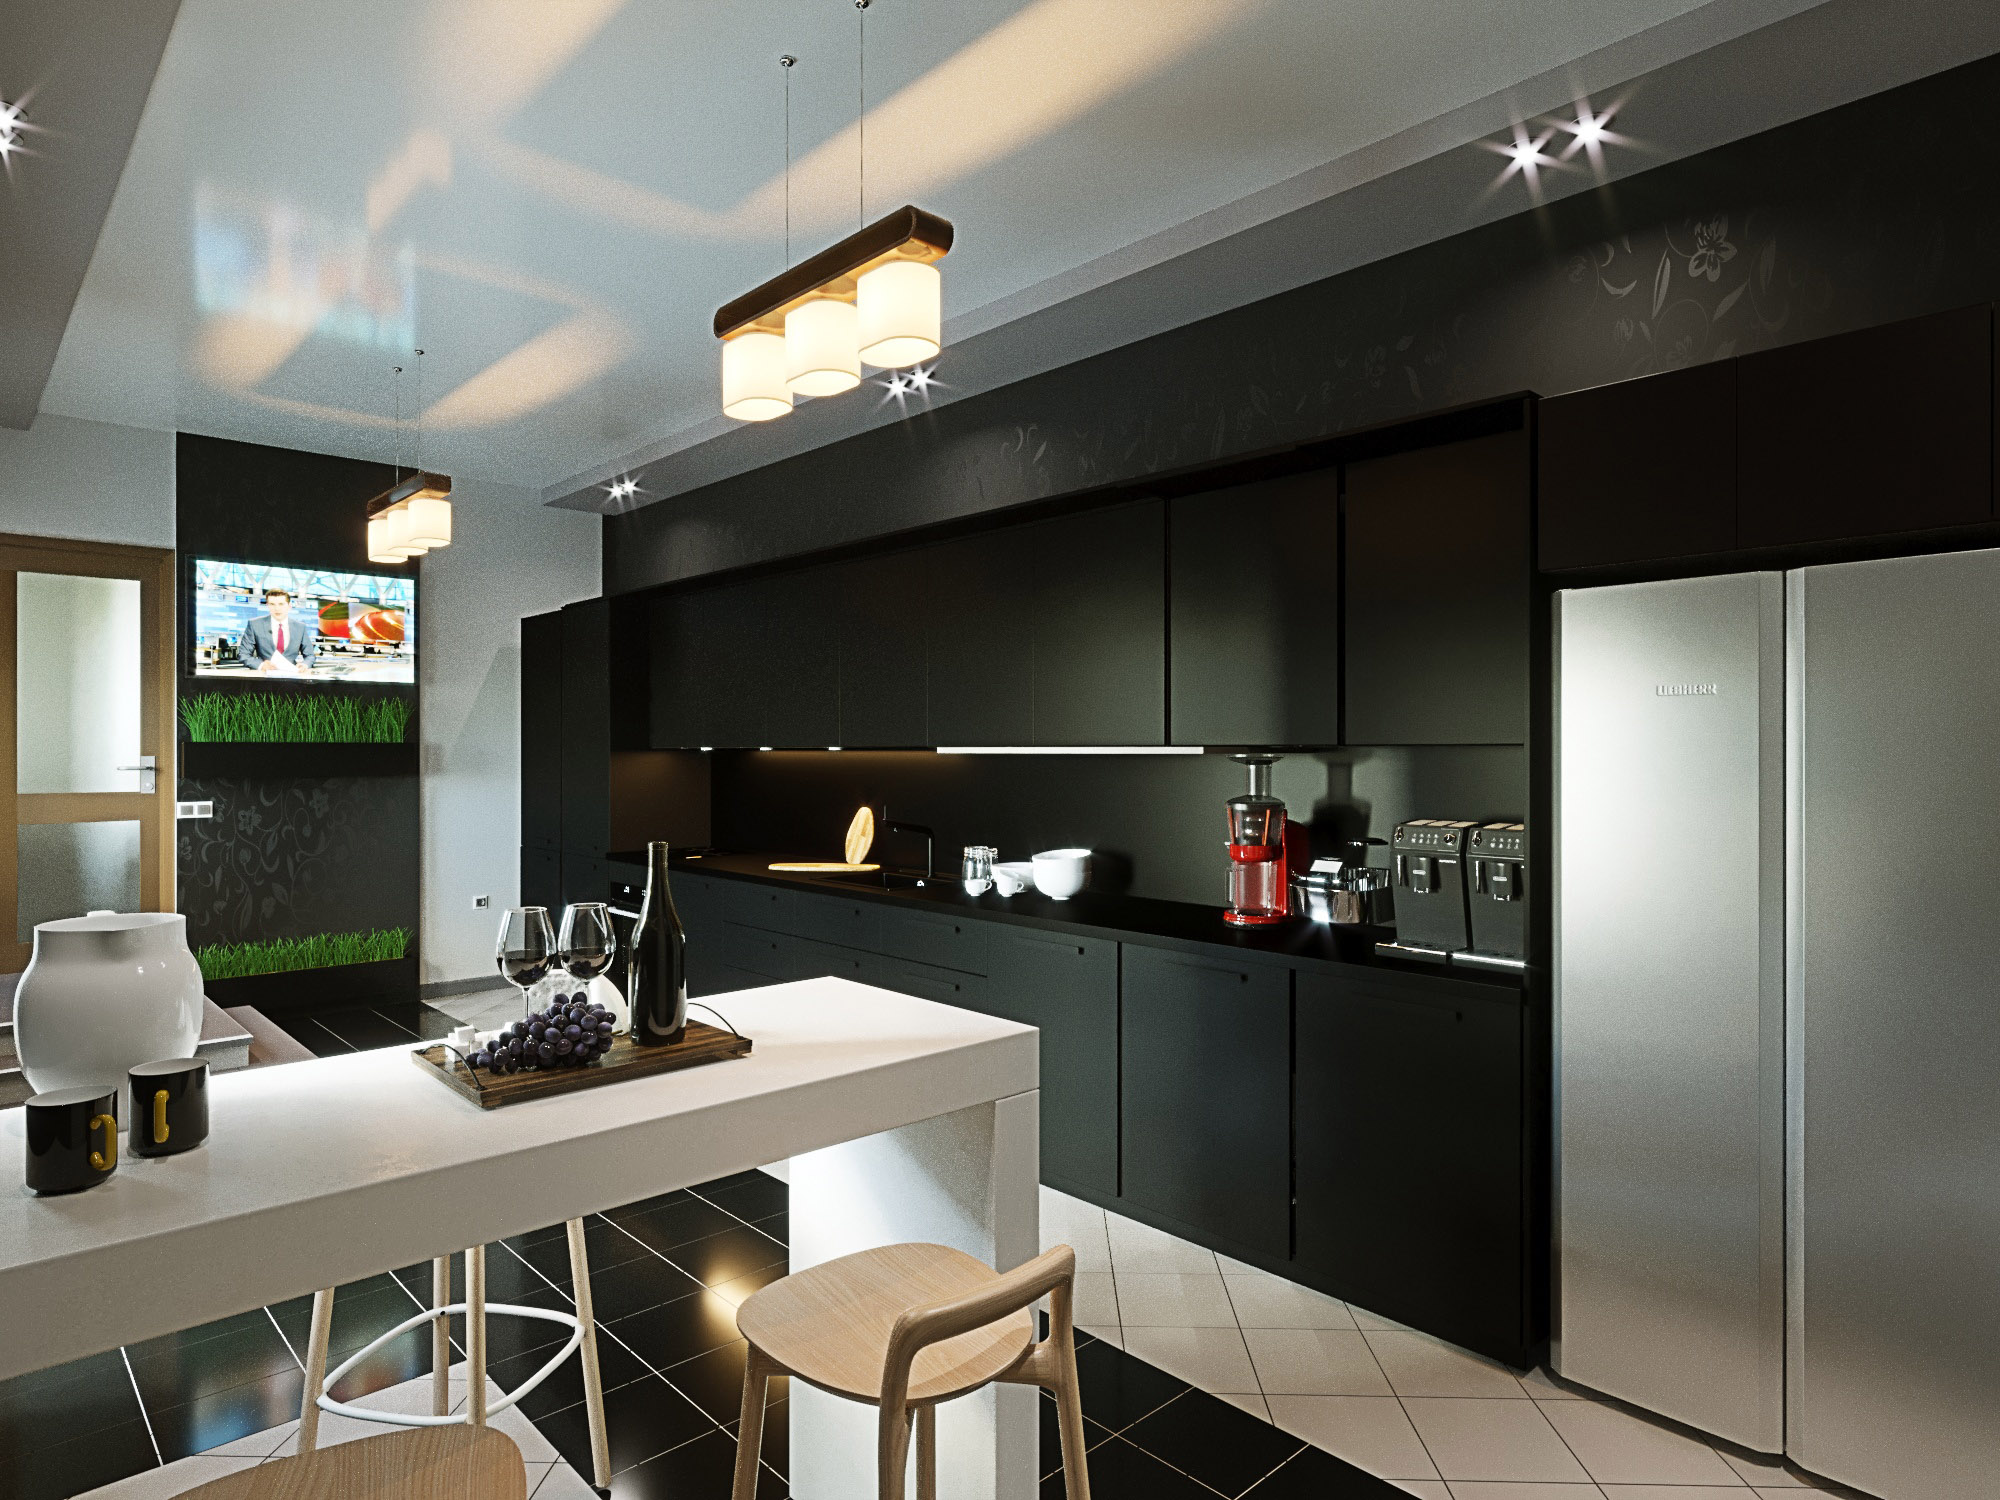 एक निजी घर में रसोईघर ArchiCAD corona render में प्रस्तुत छवि